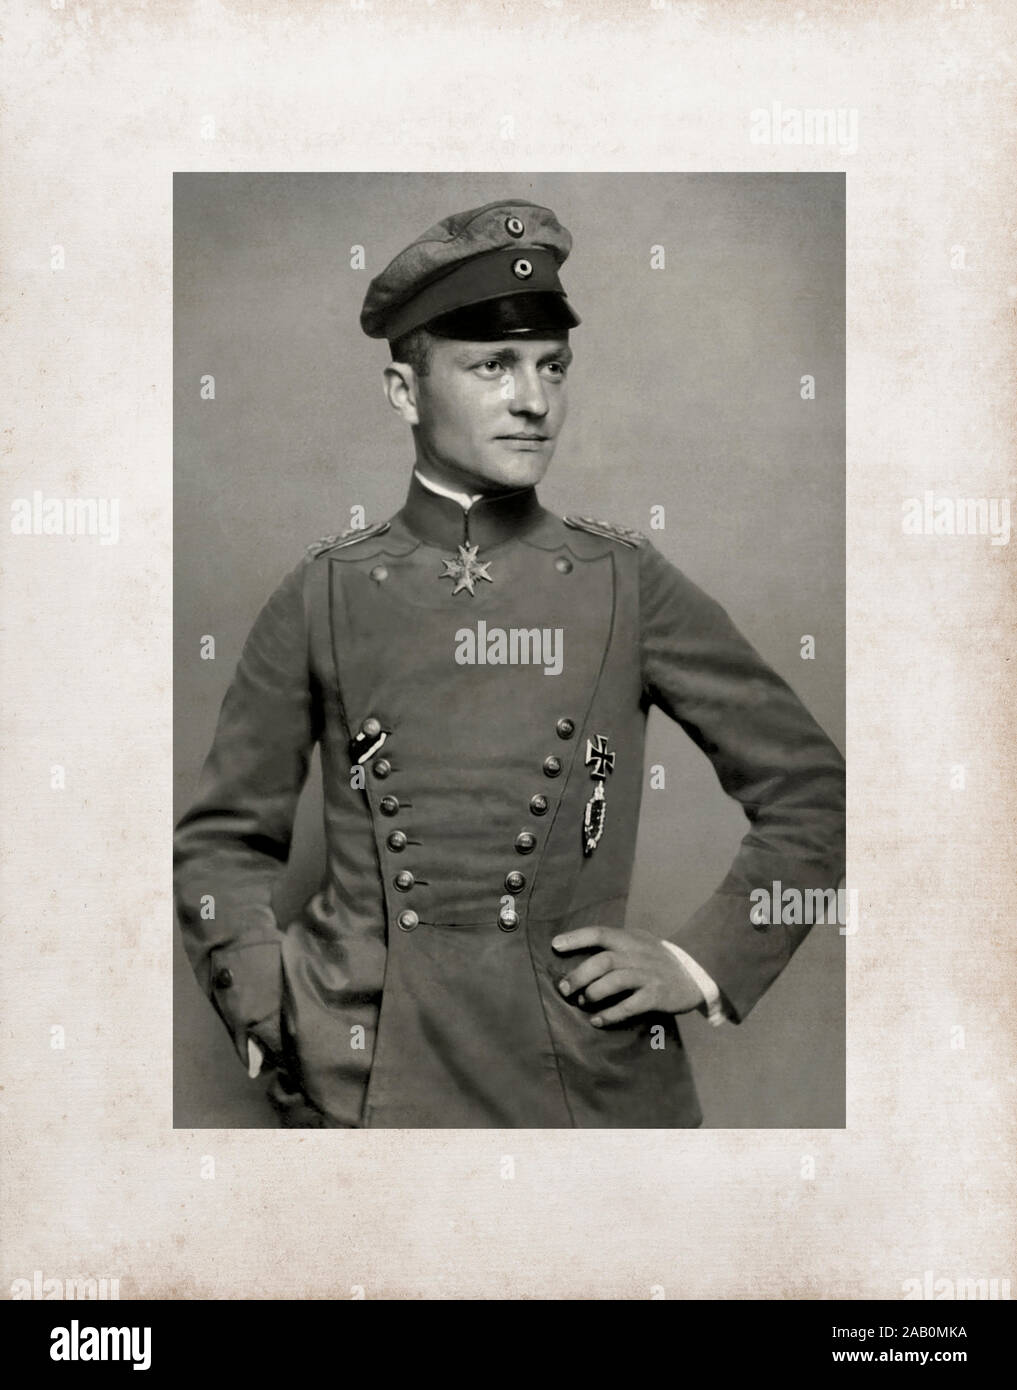 Manfred Albrecht Freiherr von Richthofen (2 mai 1892 - 21 avril 1918), également connu sous le nom de 'Red Baron', était un pilote de chasse avec la Force aérienne allemande du Banque D'Images